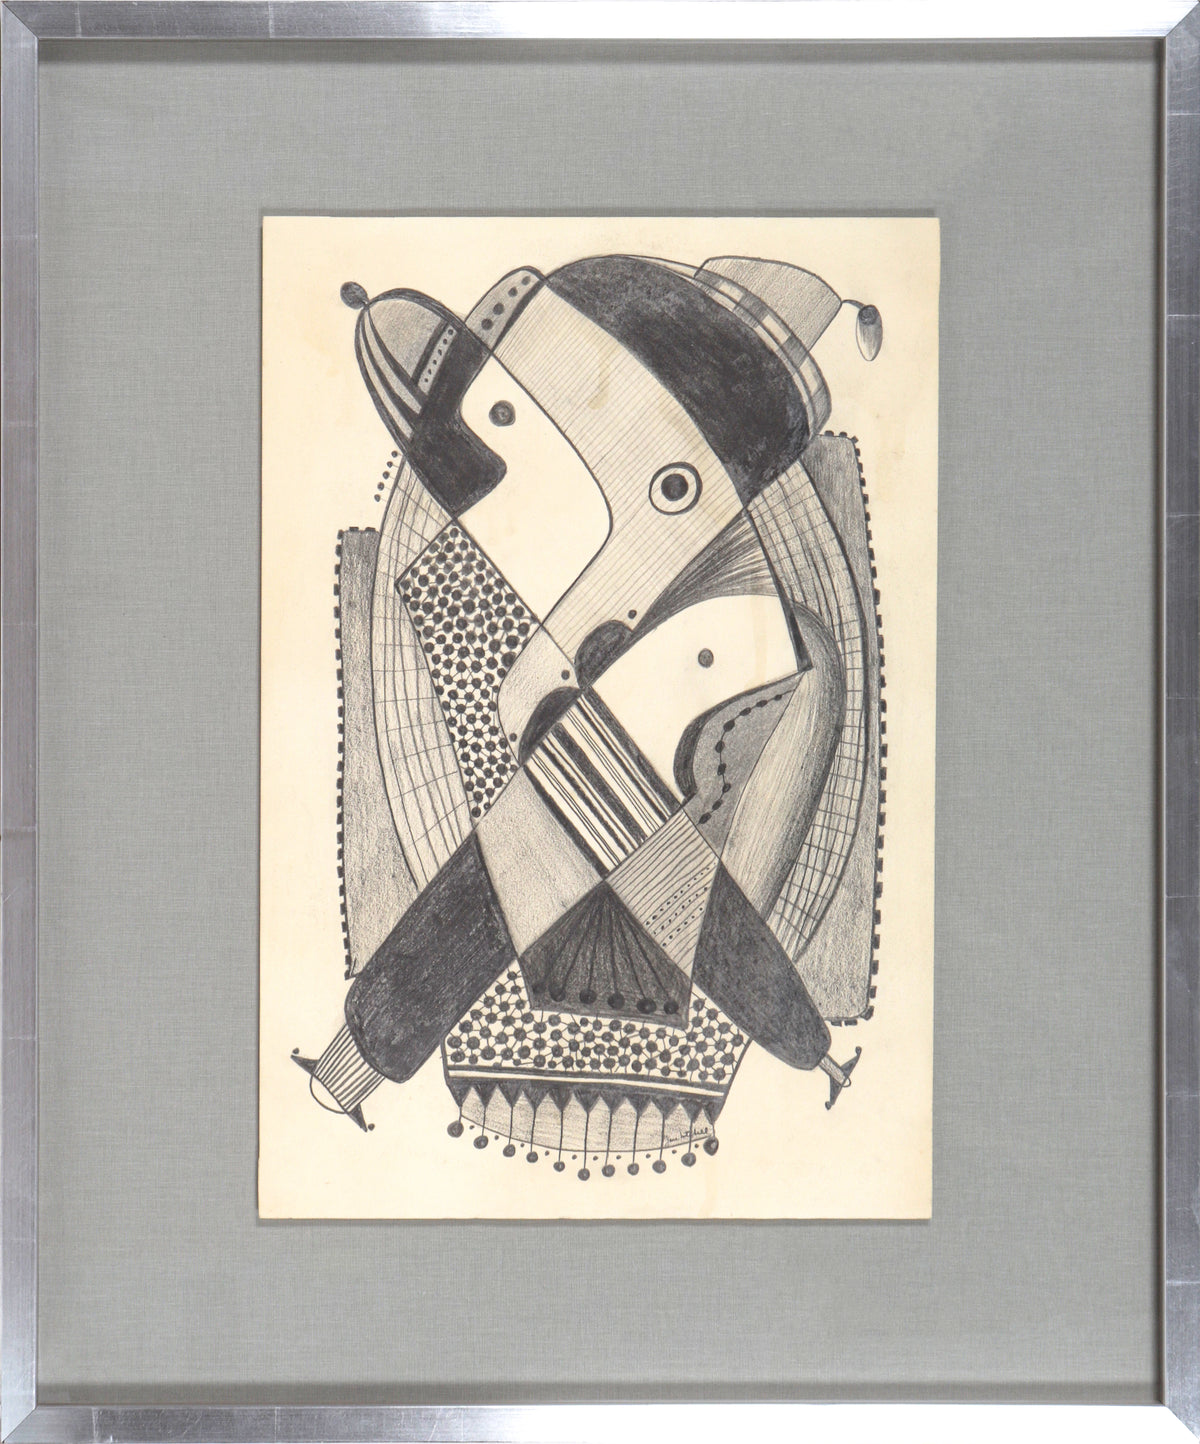 Intricate Modernist Abstract &lt;br&gt;1970-80s Graphite &lt;br&gt;&lt;br&gt;#91527